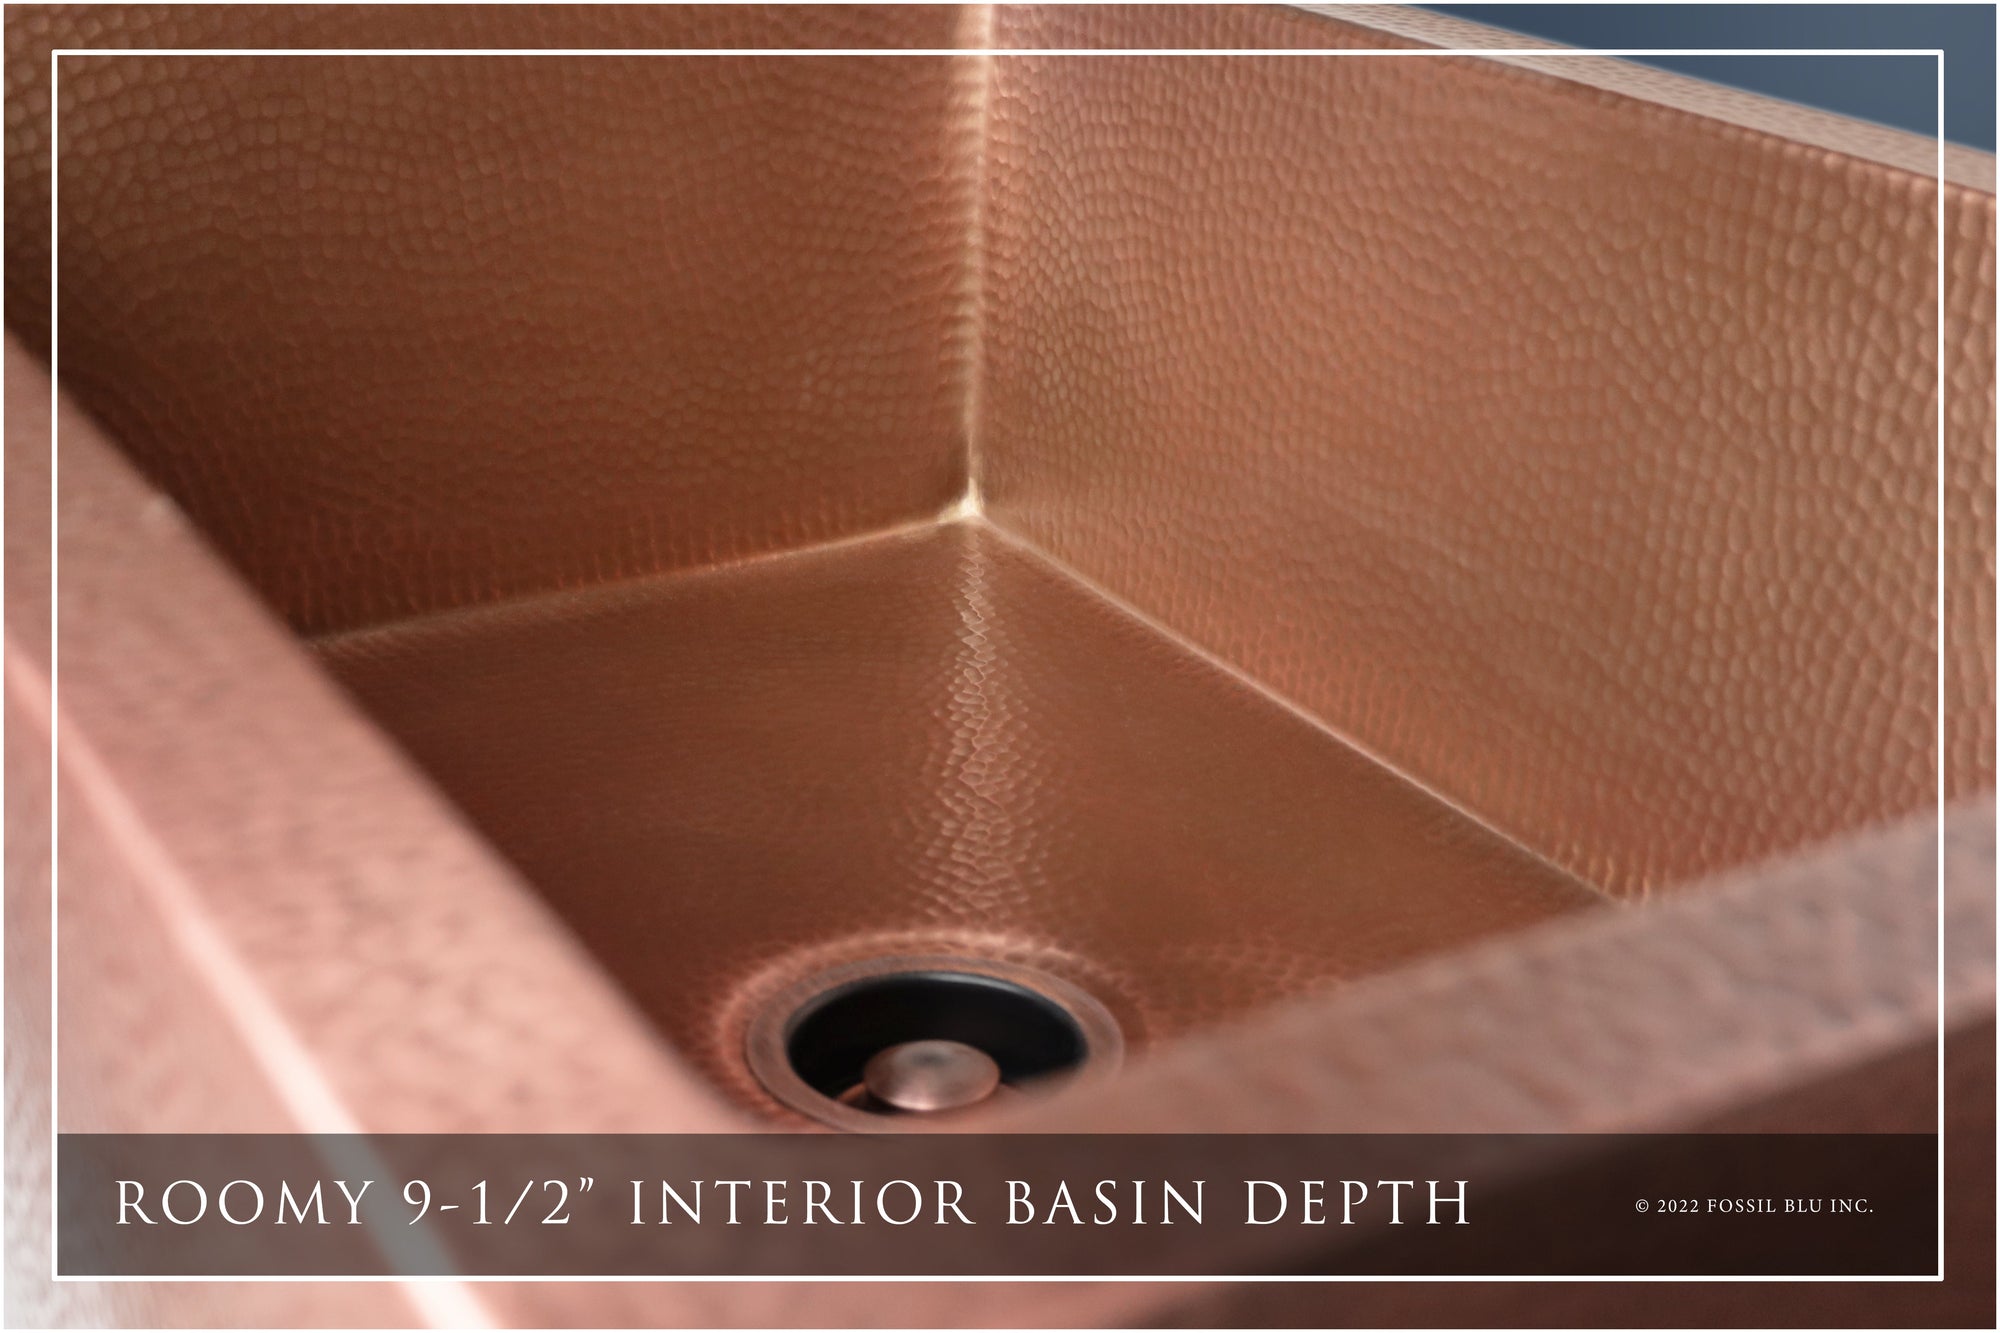 55 Garrison Copper Undermount Sink: Unique With Drainboard